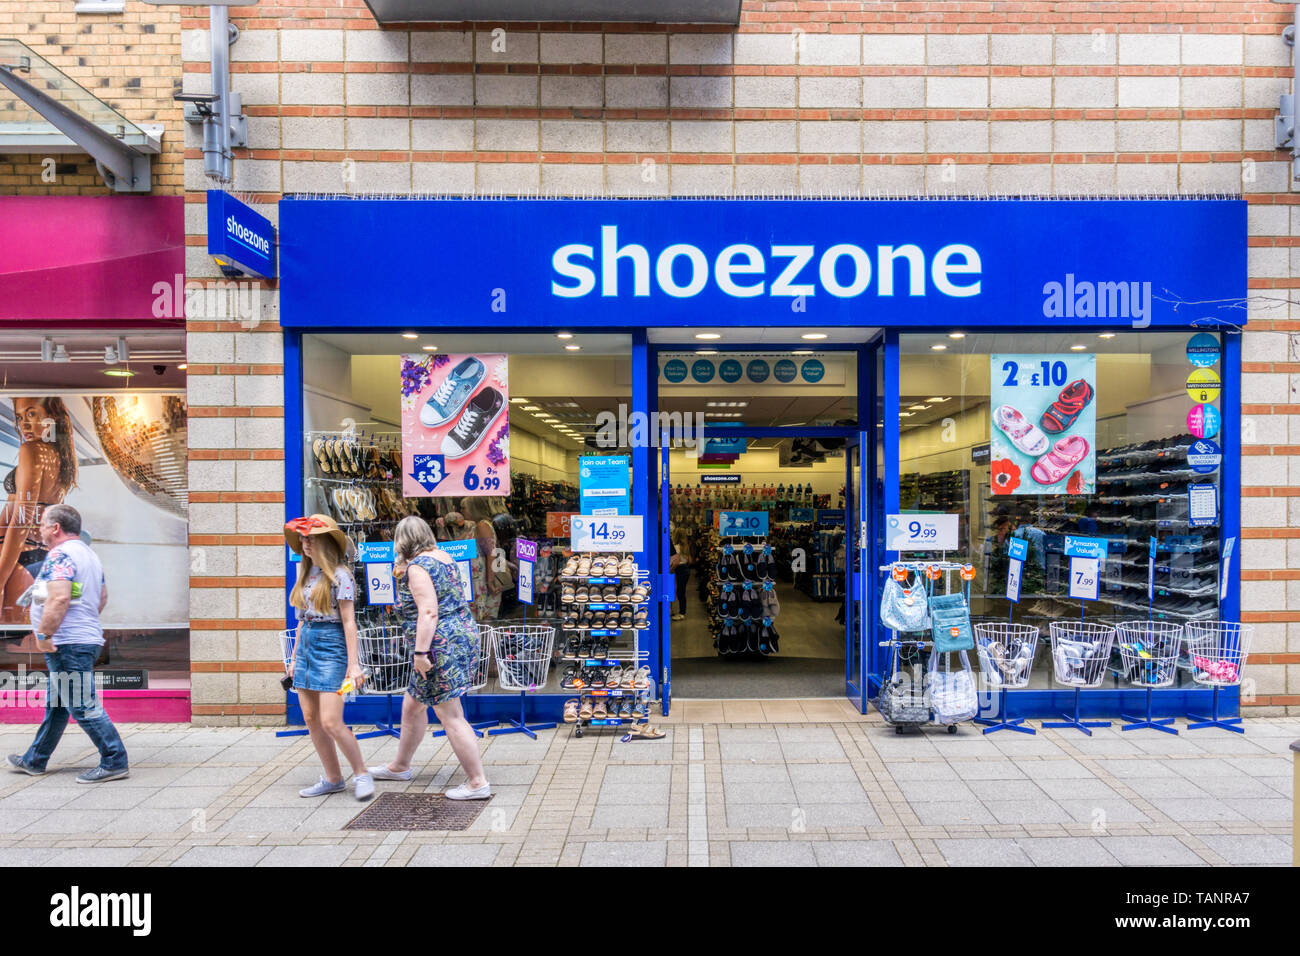 Shoe zone store -Fotos und -Bildmaterial in hoher Auflösung – Alamy